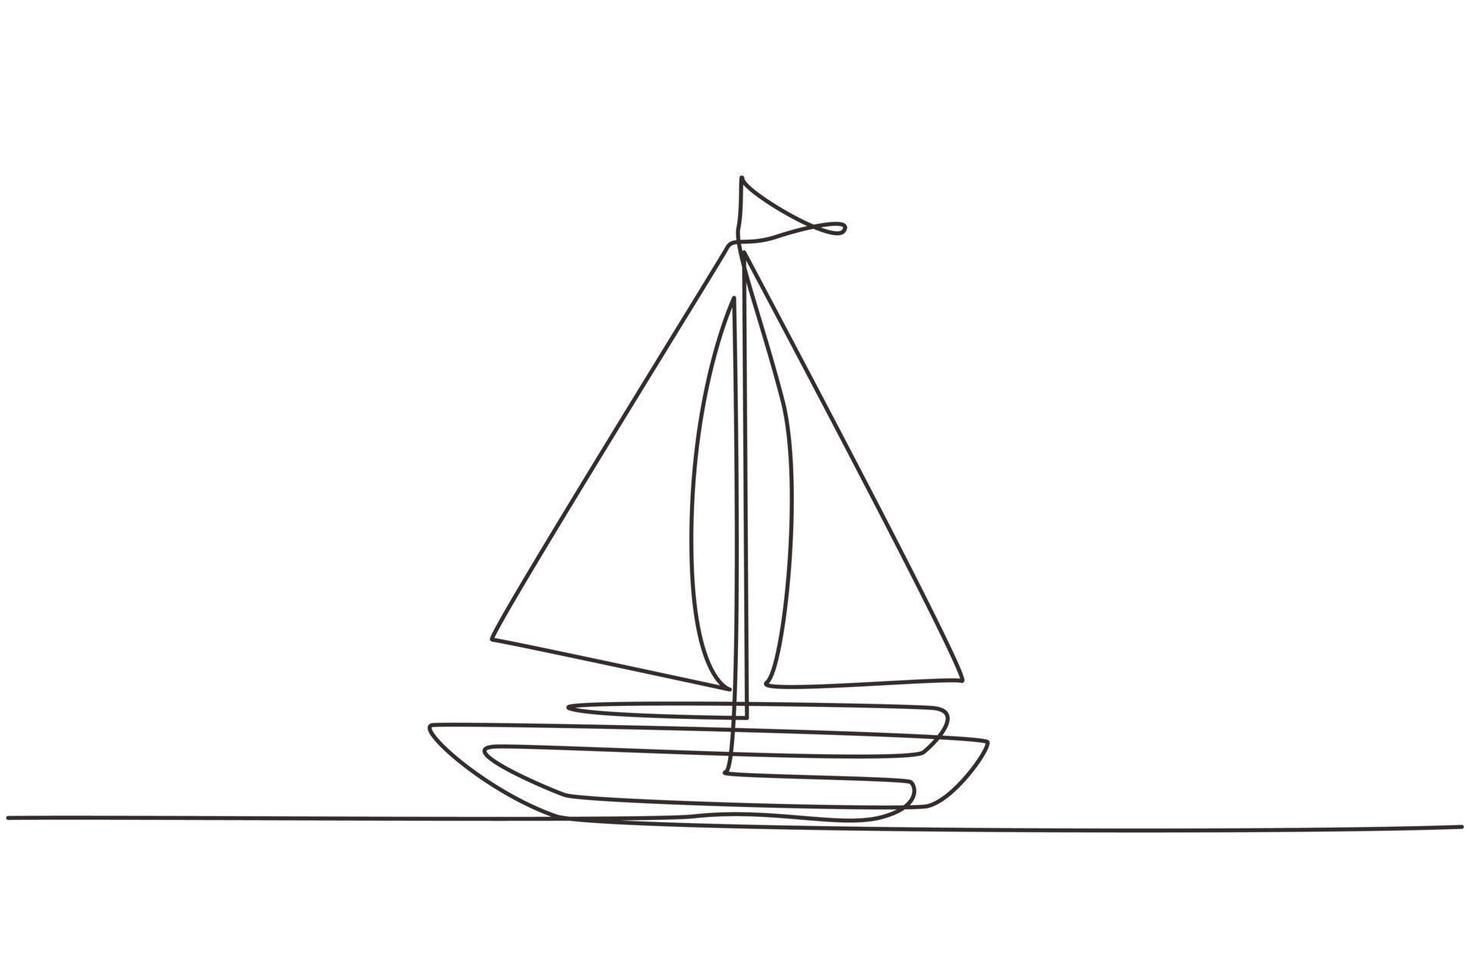 enkele lijntekening klein zeilschip, boot, zeilboot, vlakke stijl. icoon of symbool van speelgoedboot, zeilschip, zeilboot met witte zeilen. doorlopende lijn tekenen ontwerp grafische vectorillustratie vector